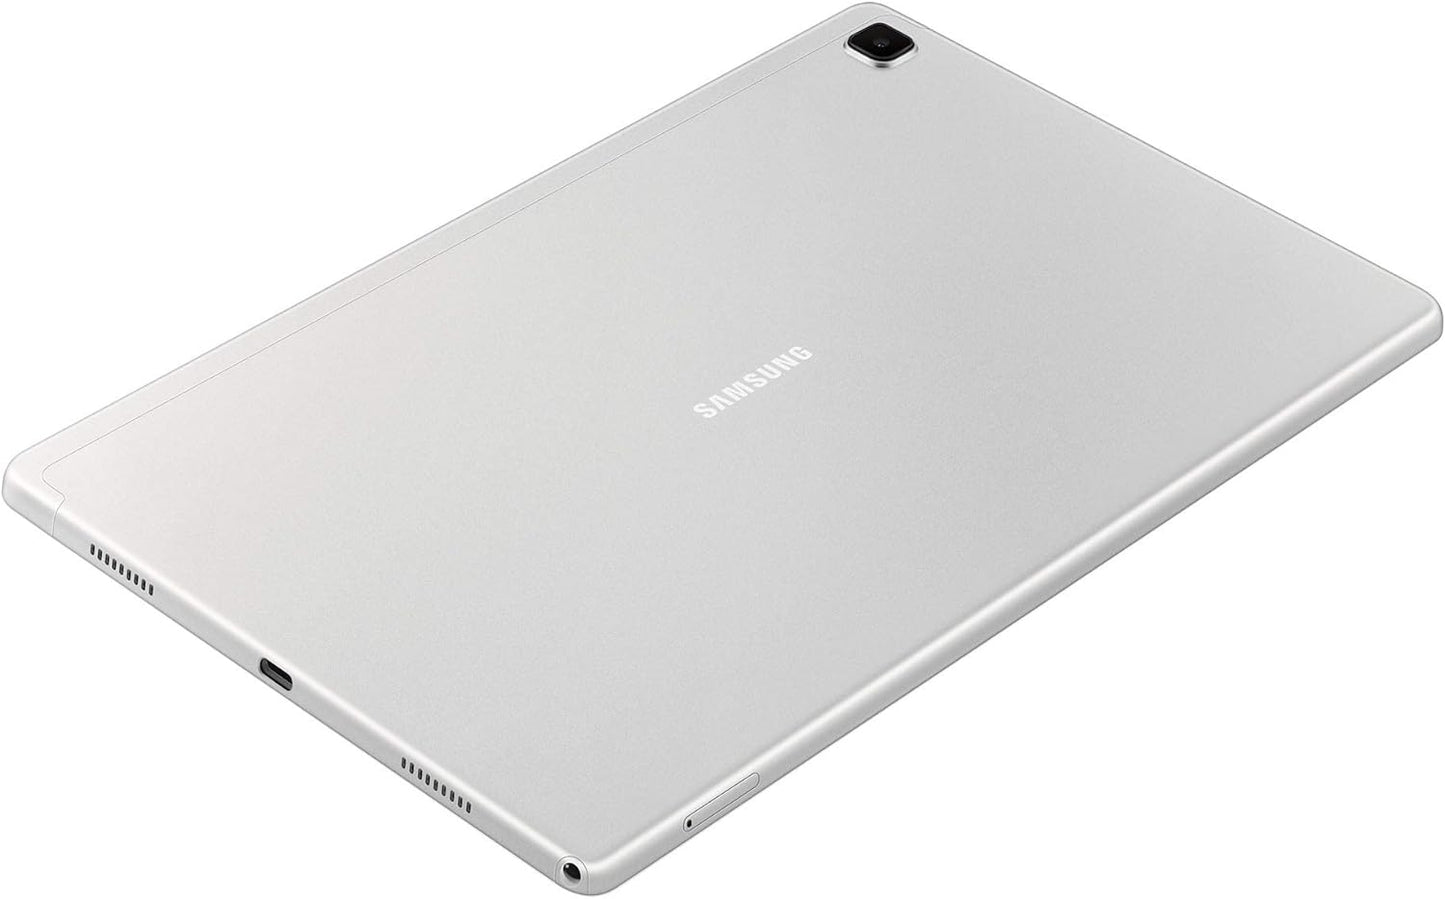 Samsung Galaxy Tab A7 Lite Tablet - Silver - 32GB Storage